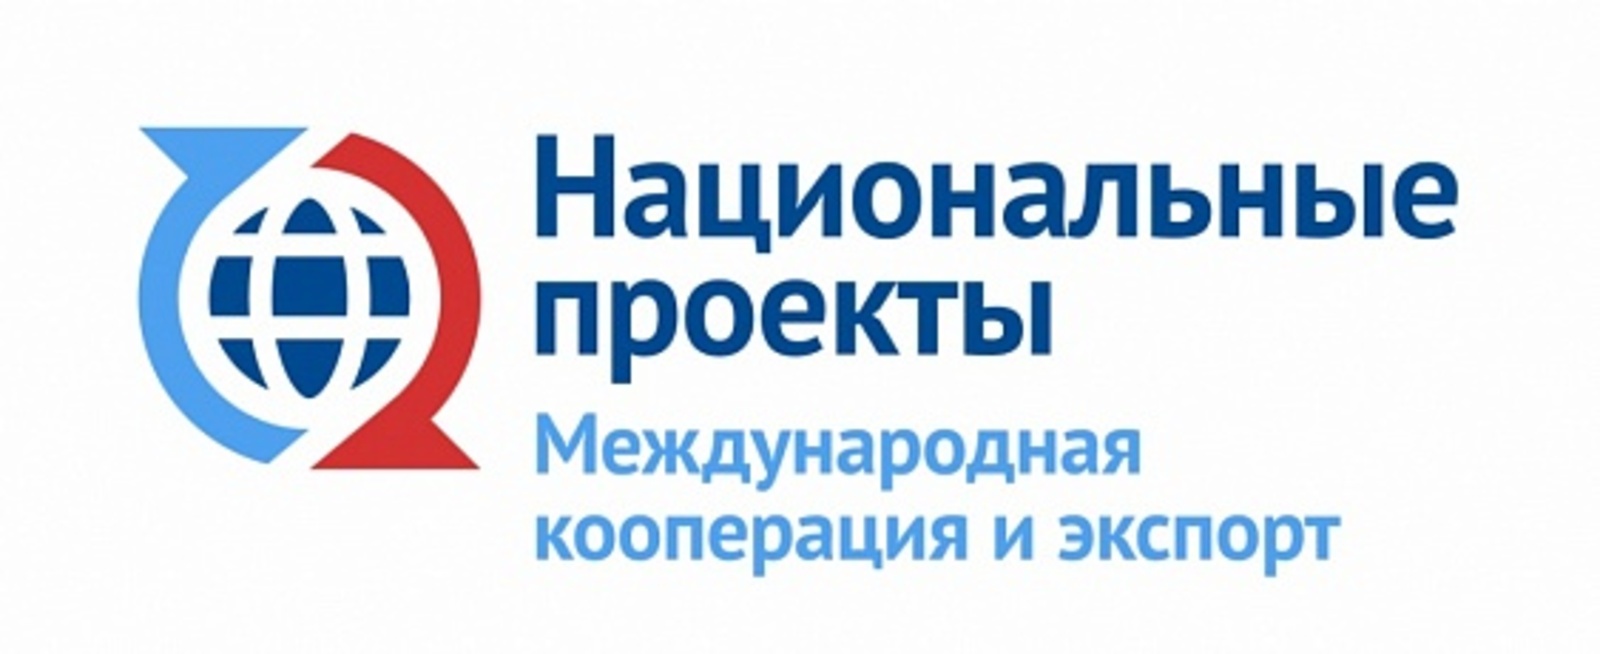 Предприятия Башкортостана вошли в число лучших экспортеров Приволжского федерального округа